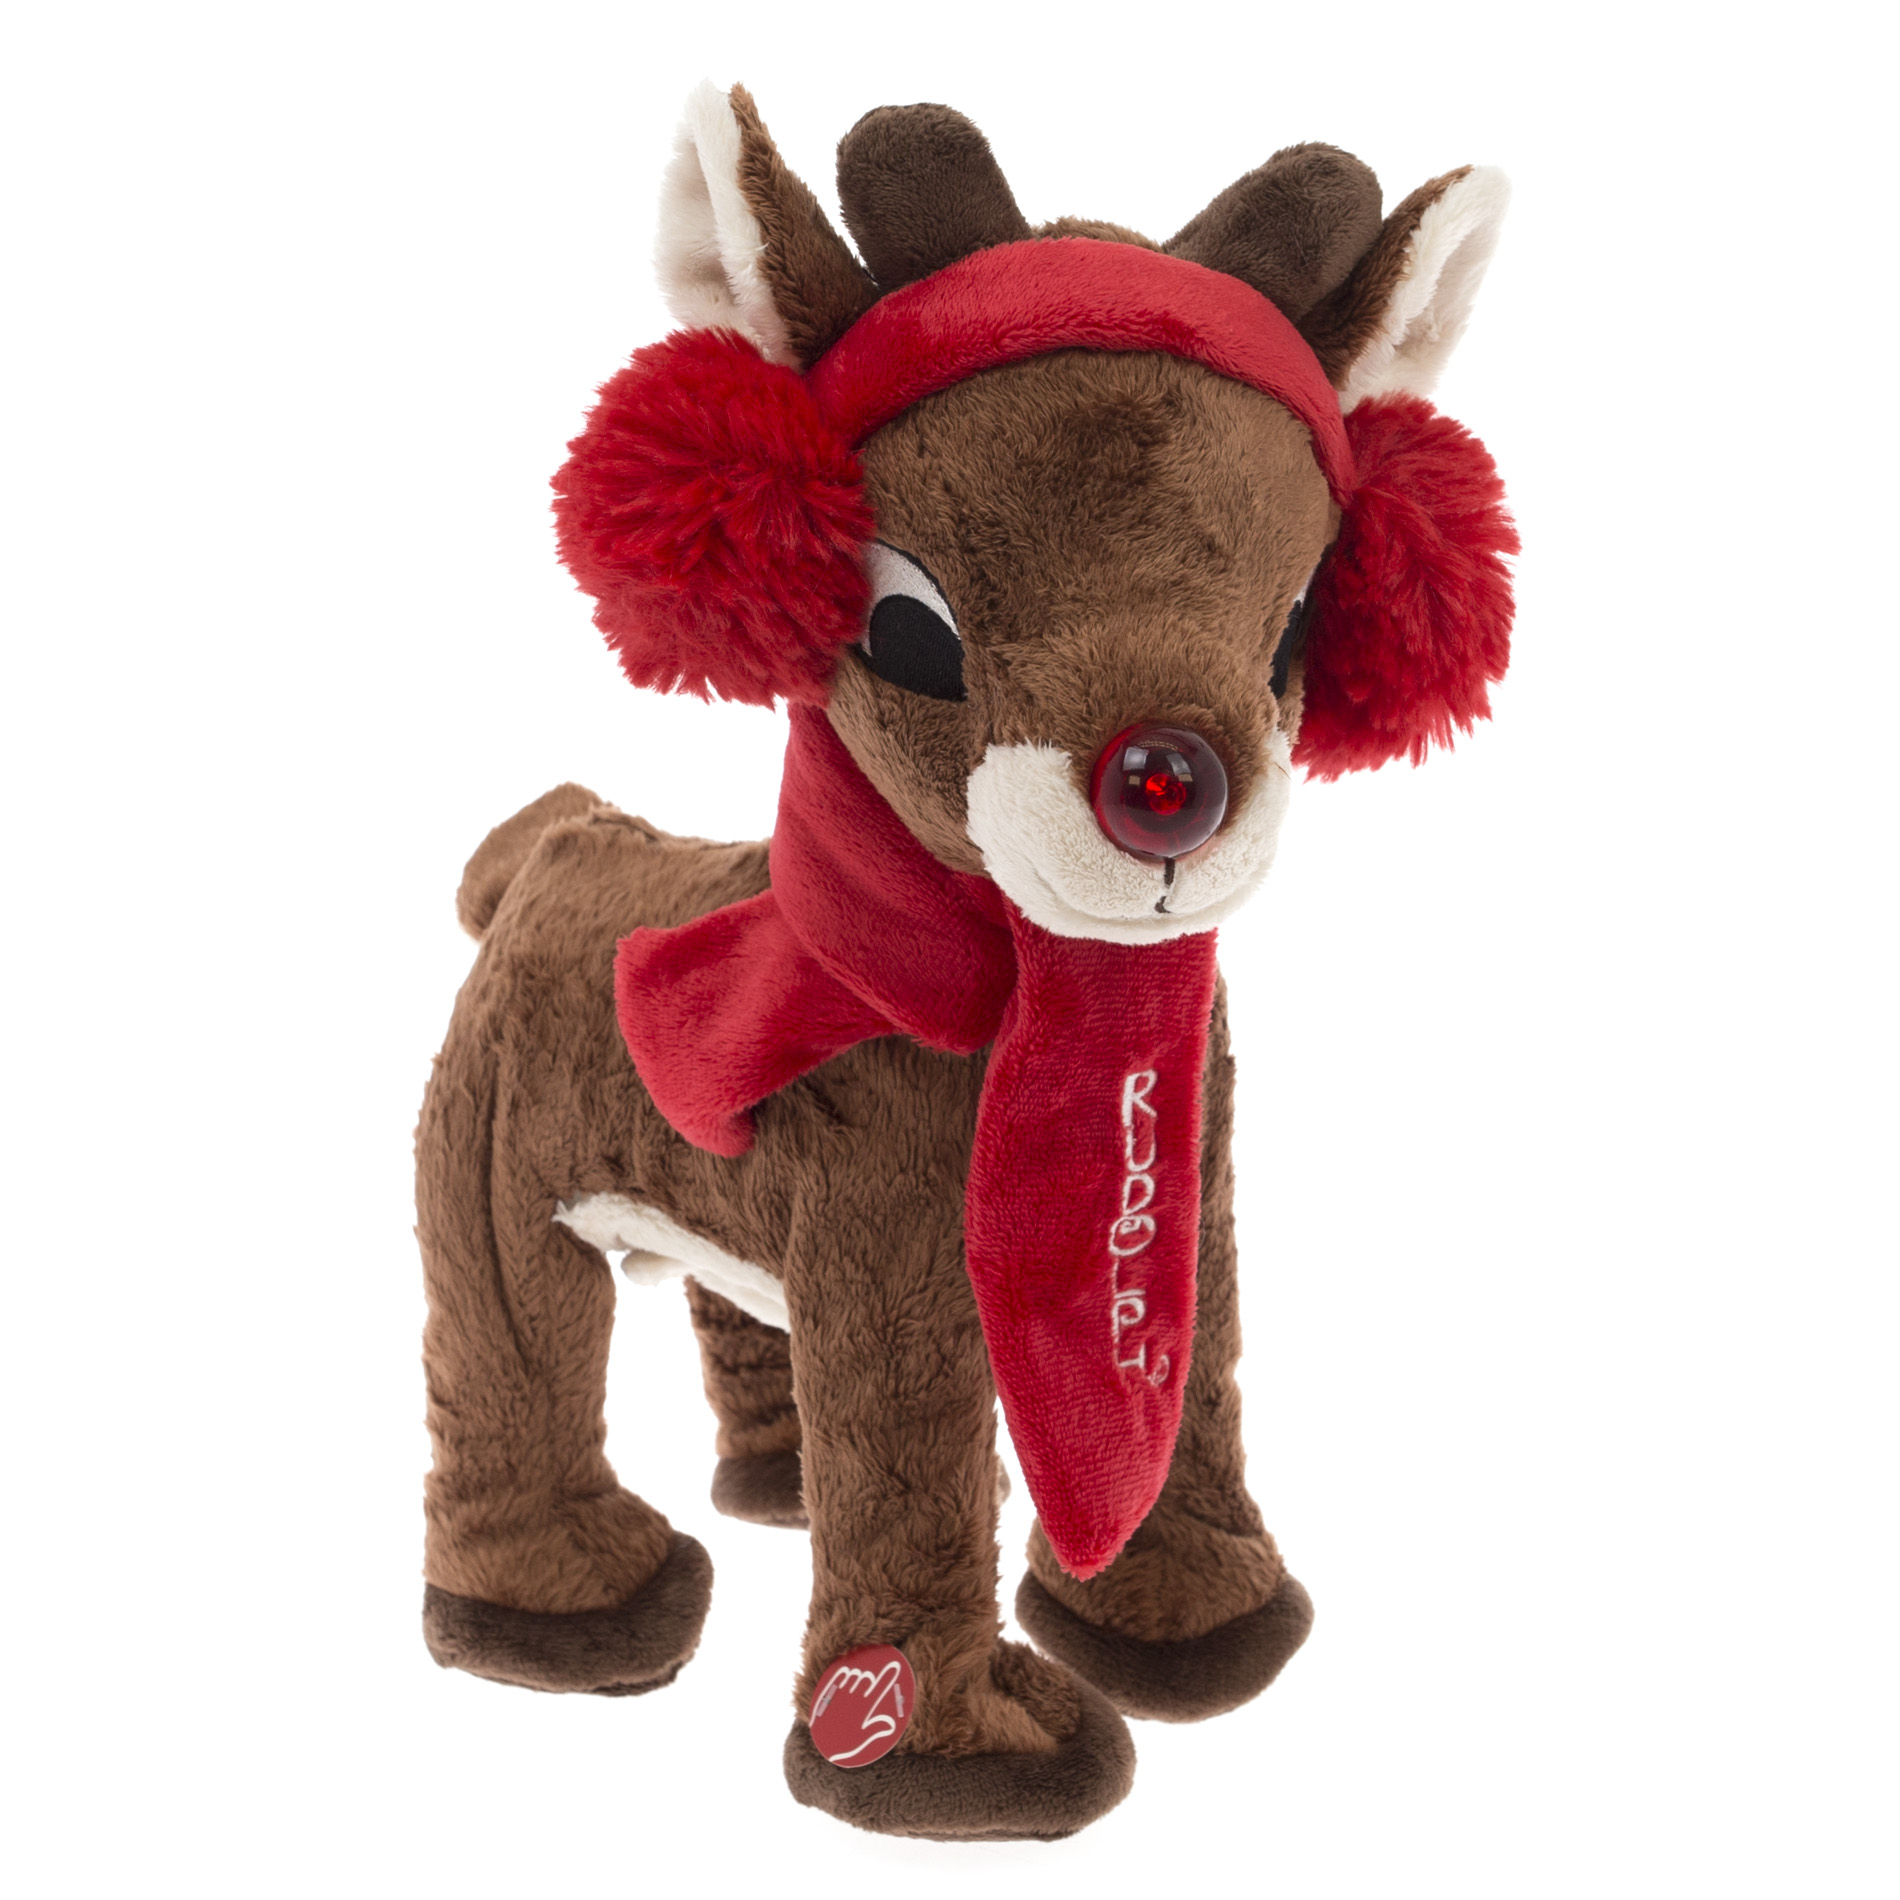 toy reindeer that walks